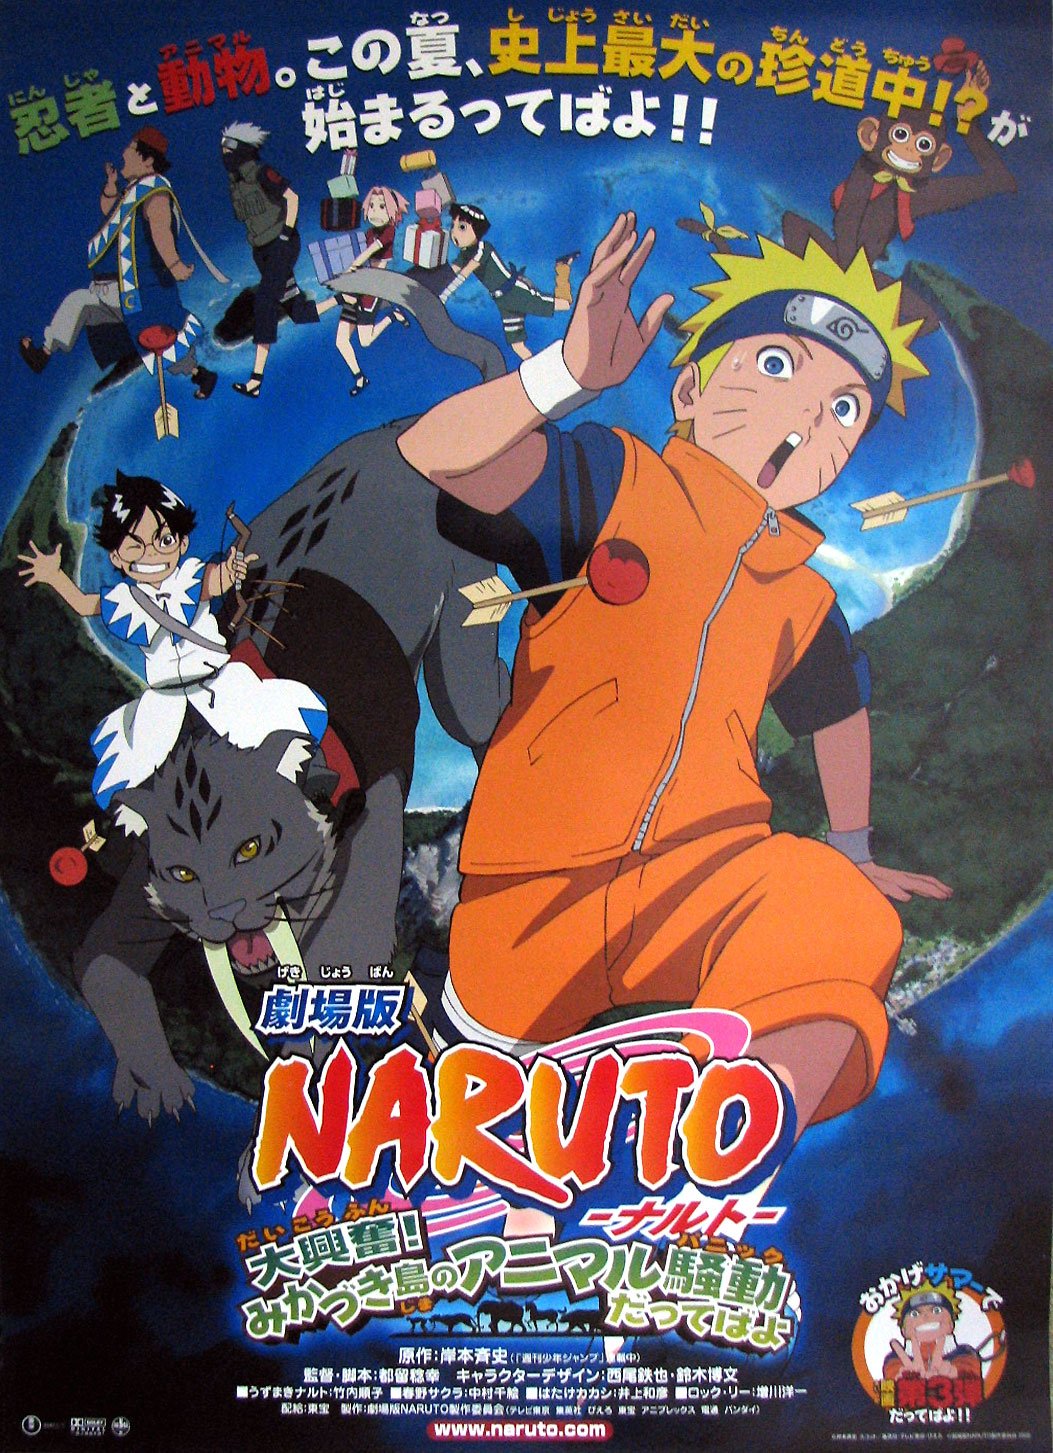 ดูหนังออนไลน์ฟรี Naruto The Movie 3 (2006) เกาะเสี้ยวจันทรา หนังเต็มเรื่อง หนังมาสเตอร์ ดูหนังHD ดูหนังออนไลน์ ดูหนังใหม่